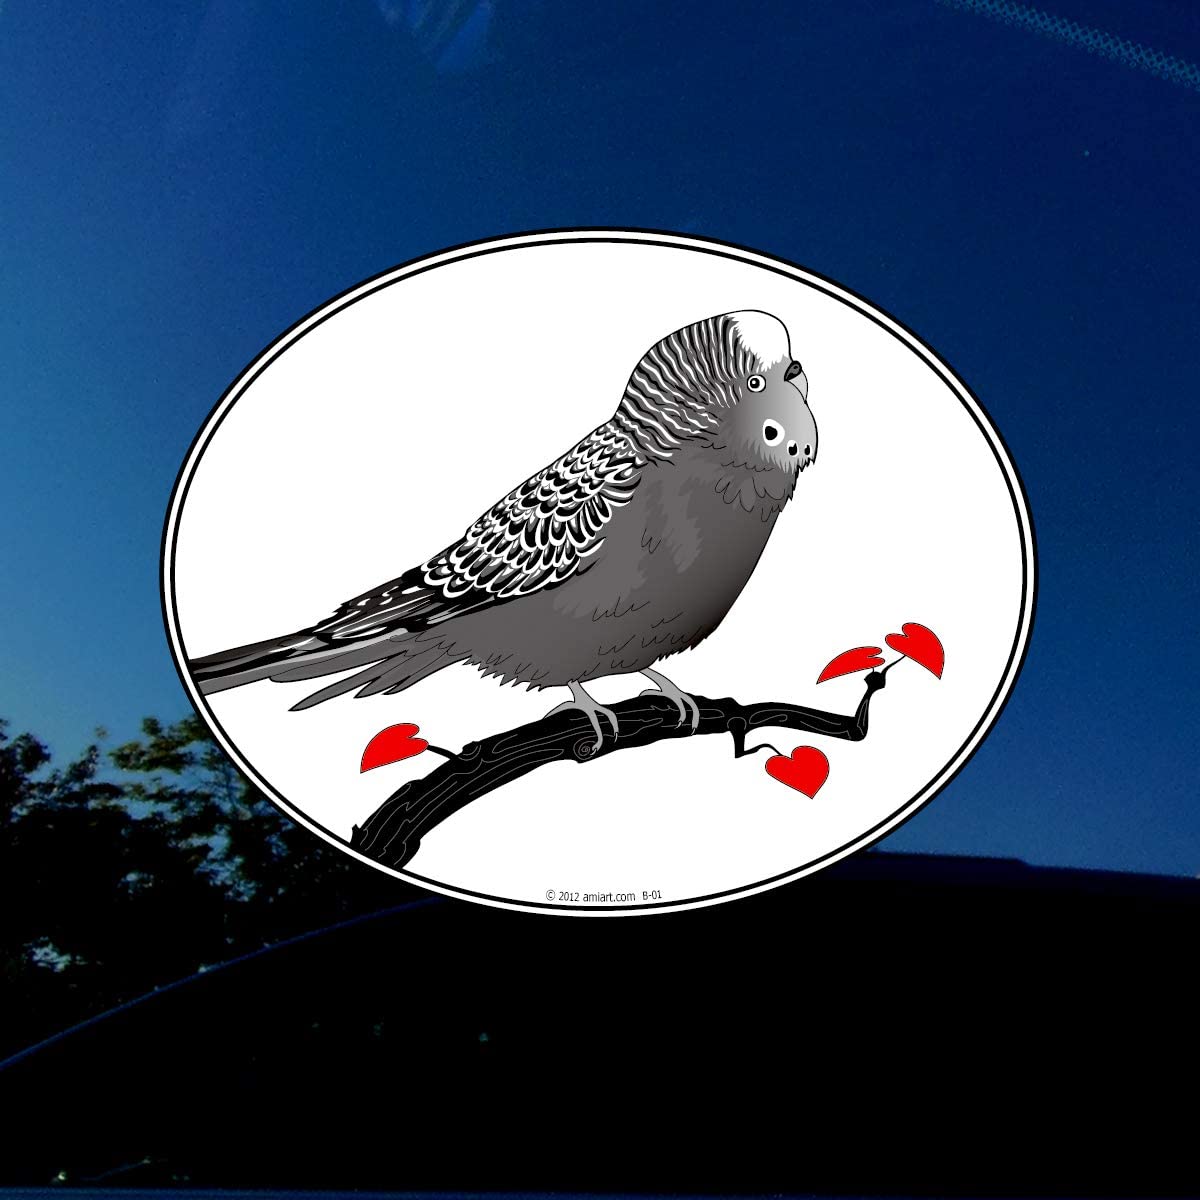 Budgerigar Australian Parakeets Bird Car Bumper Window Vinyl Sticker Decal 4"X5" 